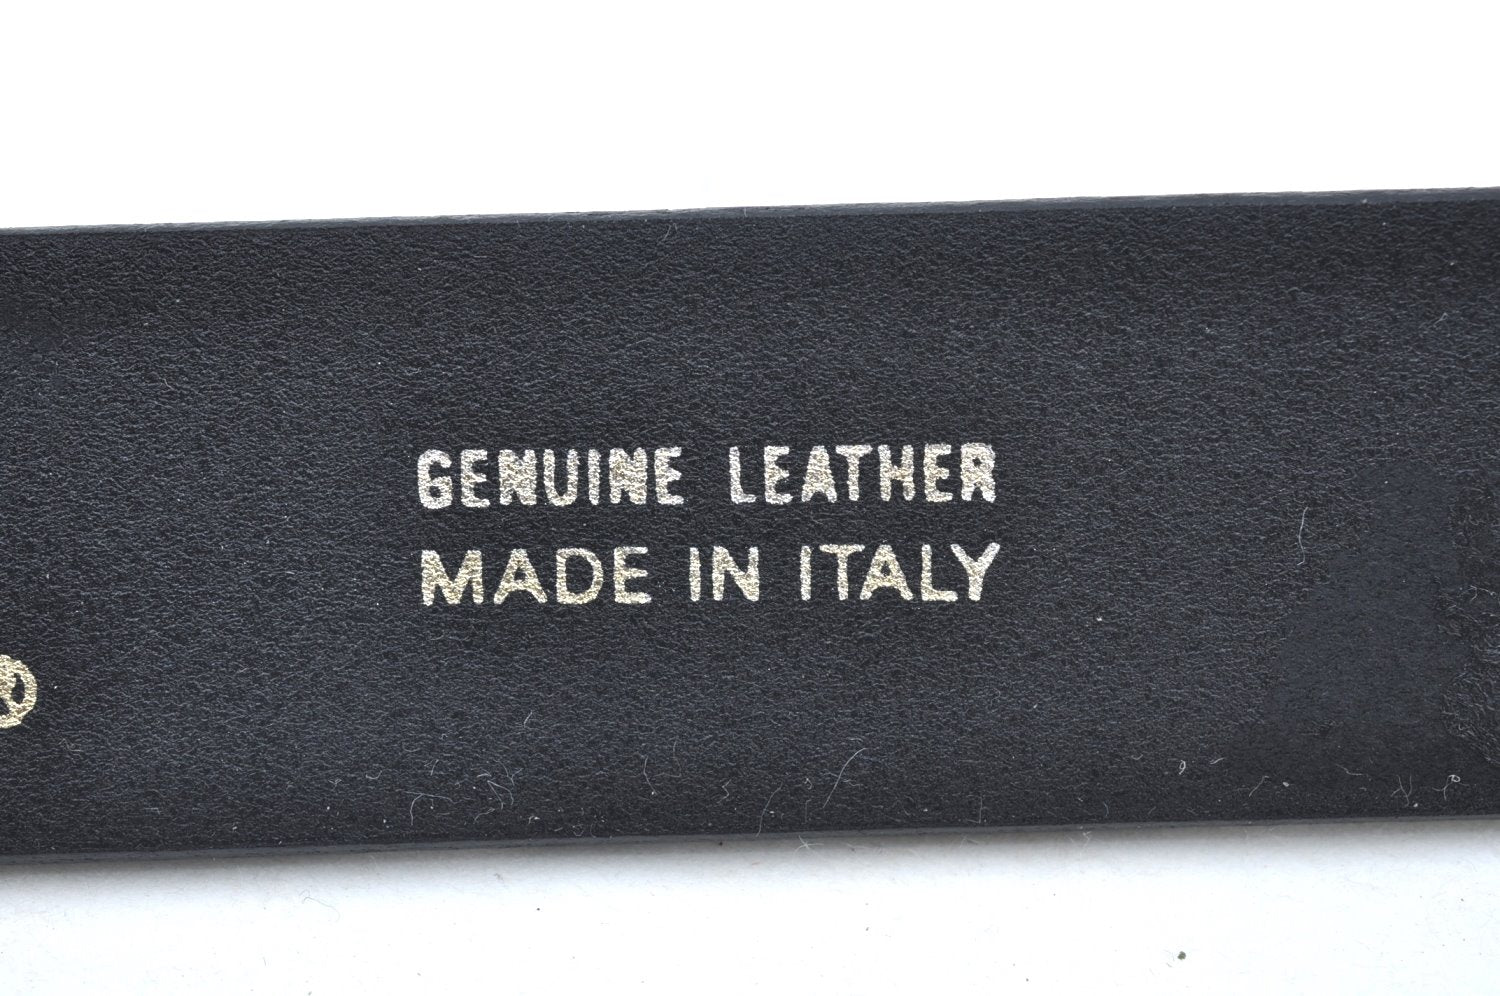 Authentic FENDI Vintage Belt Leather Size 110cm 43.3